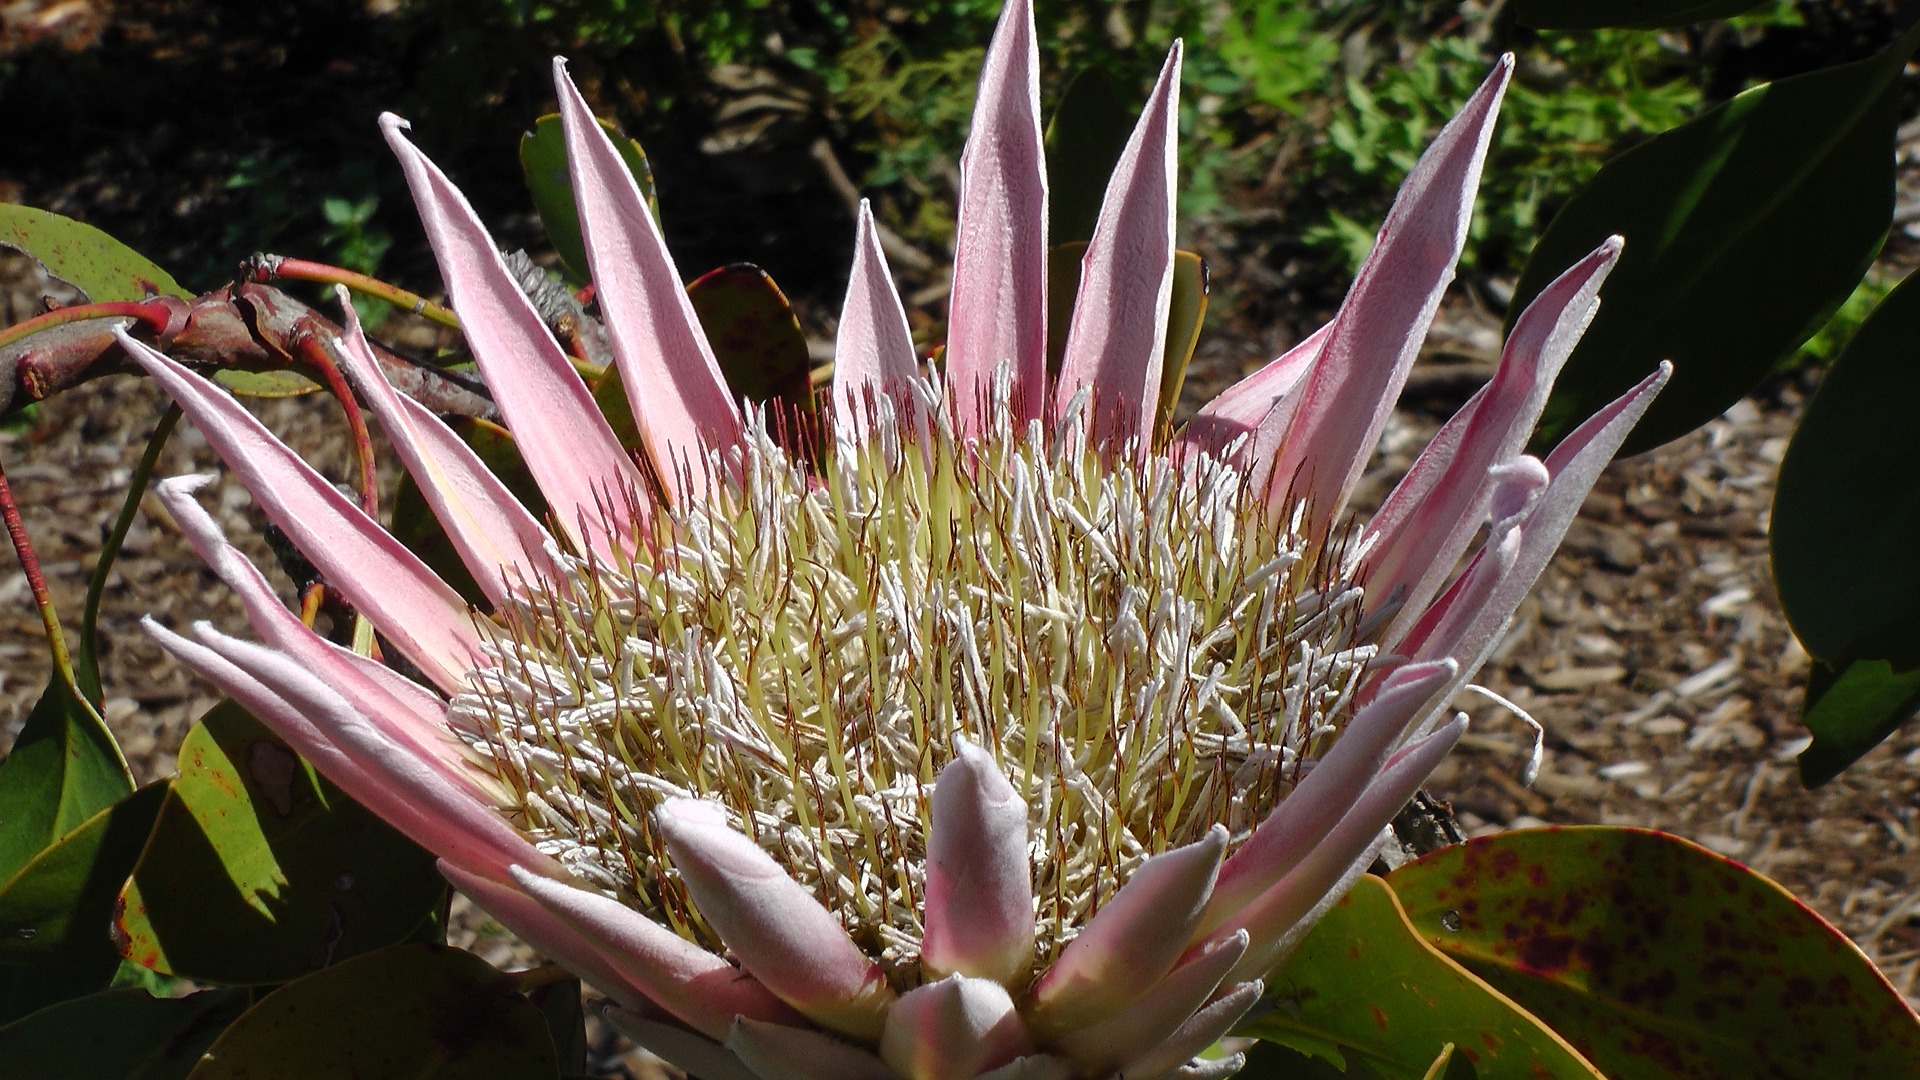 Kirstenbosch